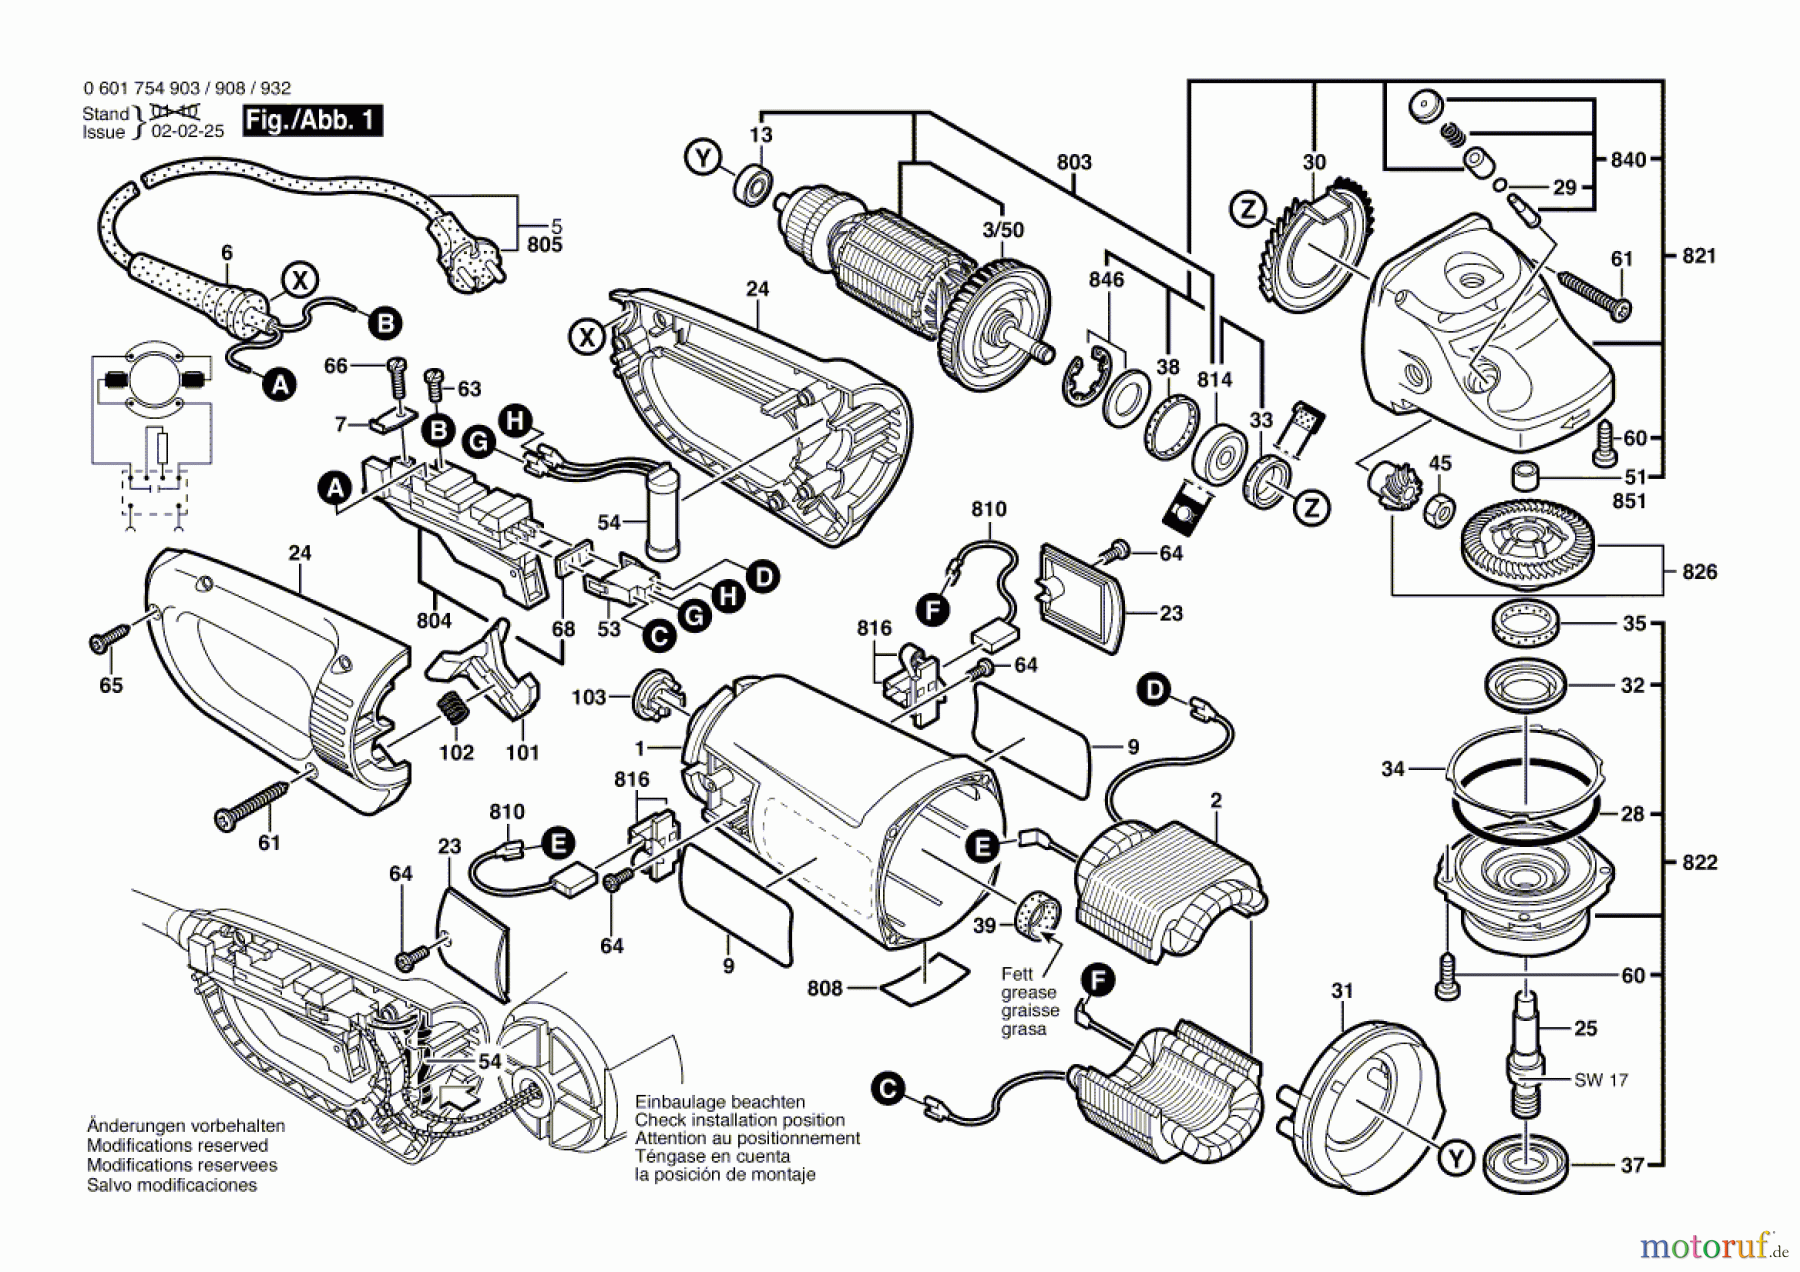  Bosch Werkzeug Winkelschleifer GWS 2300-23 J Seite 1